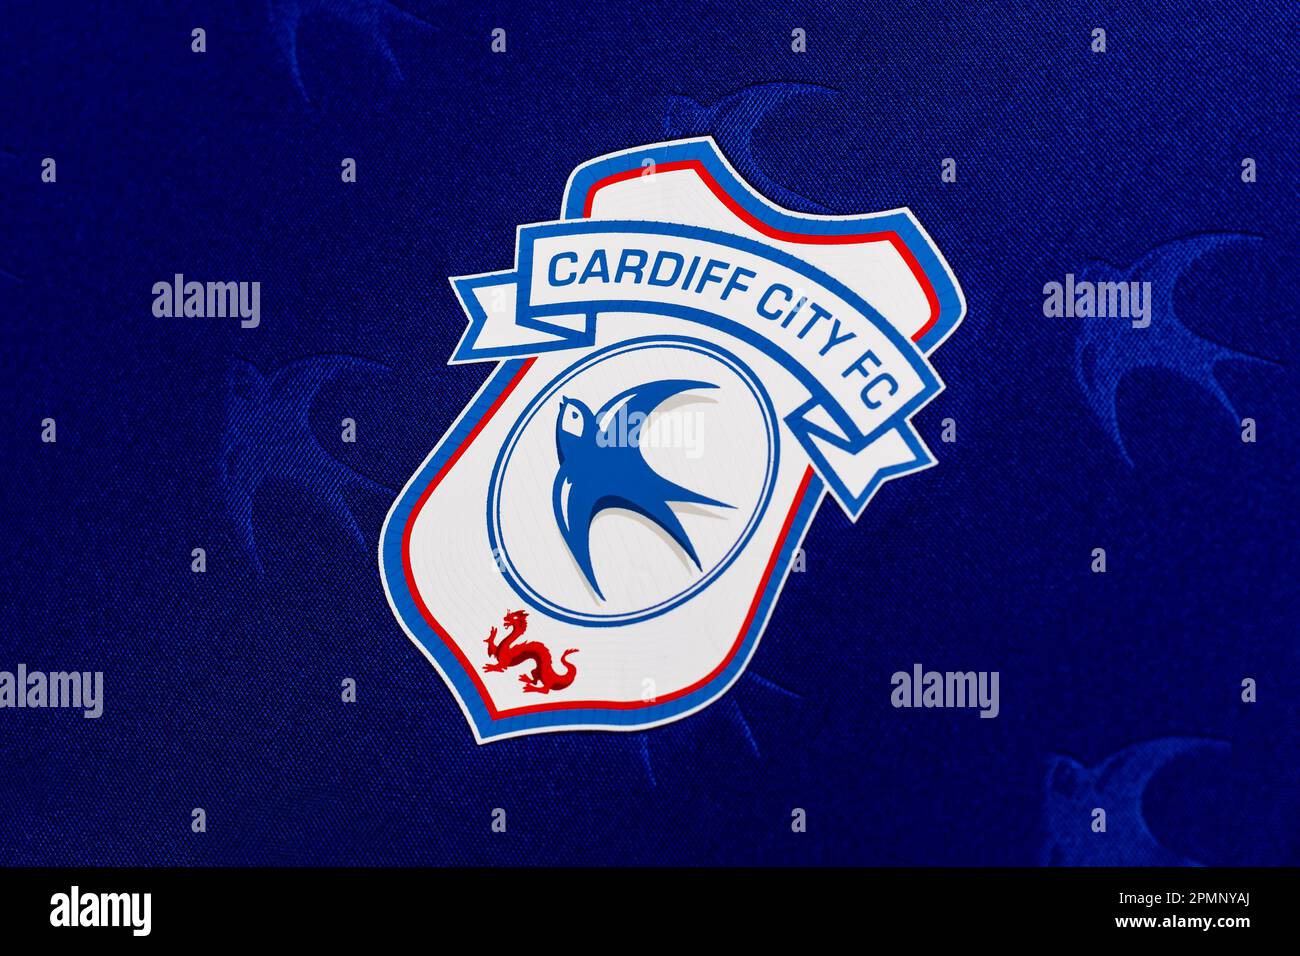 Primo piano del badge della squadra di calcio della città di Cardiff Foto Stock